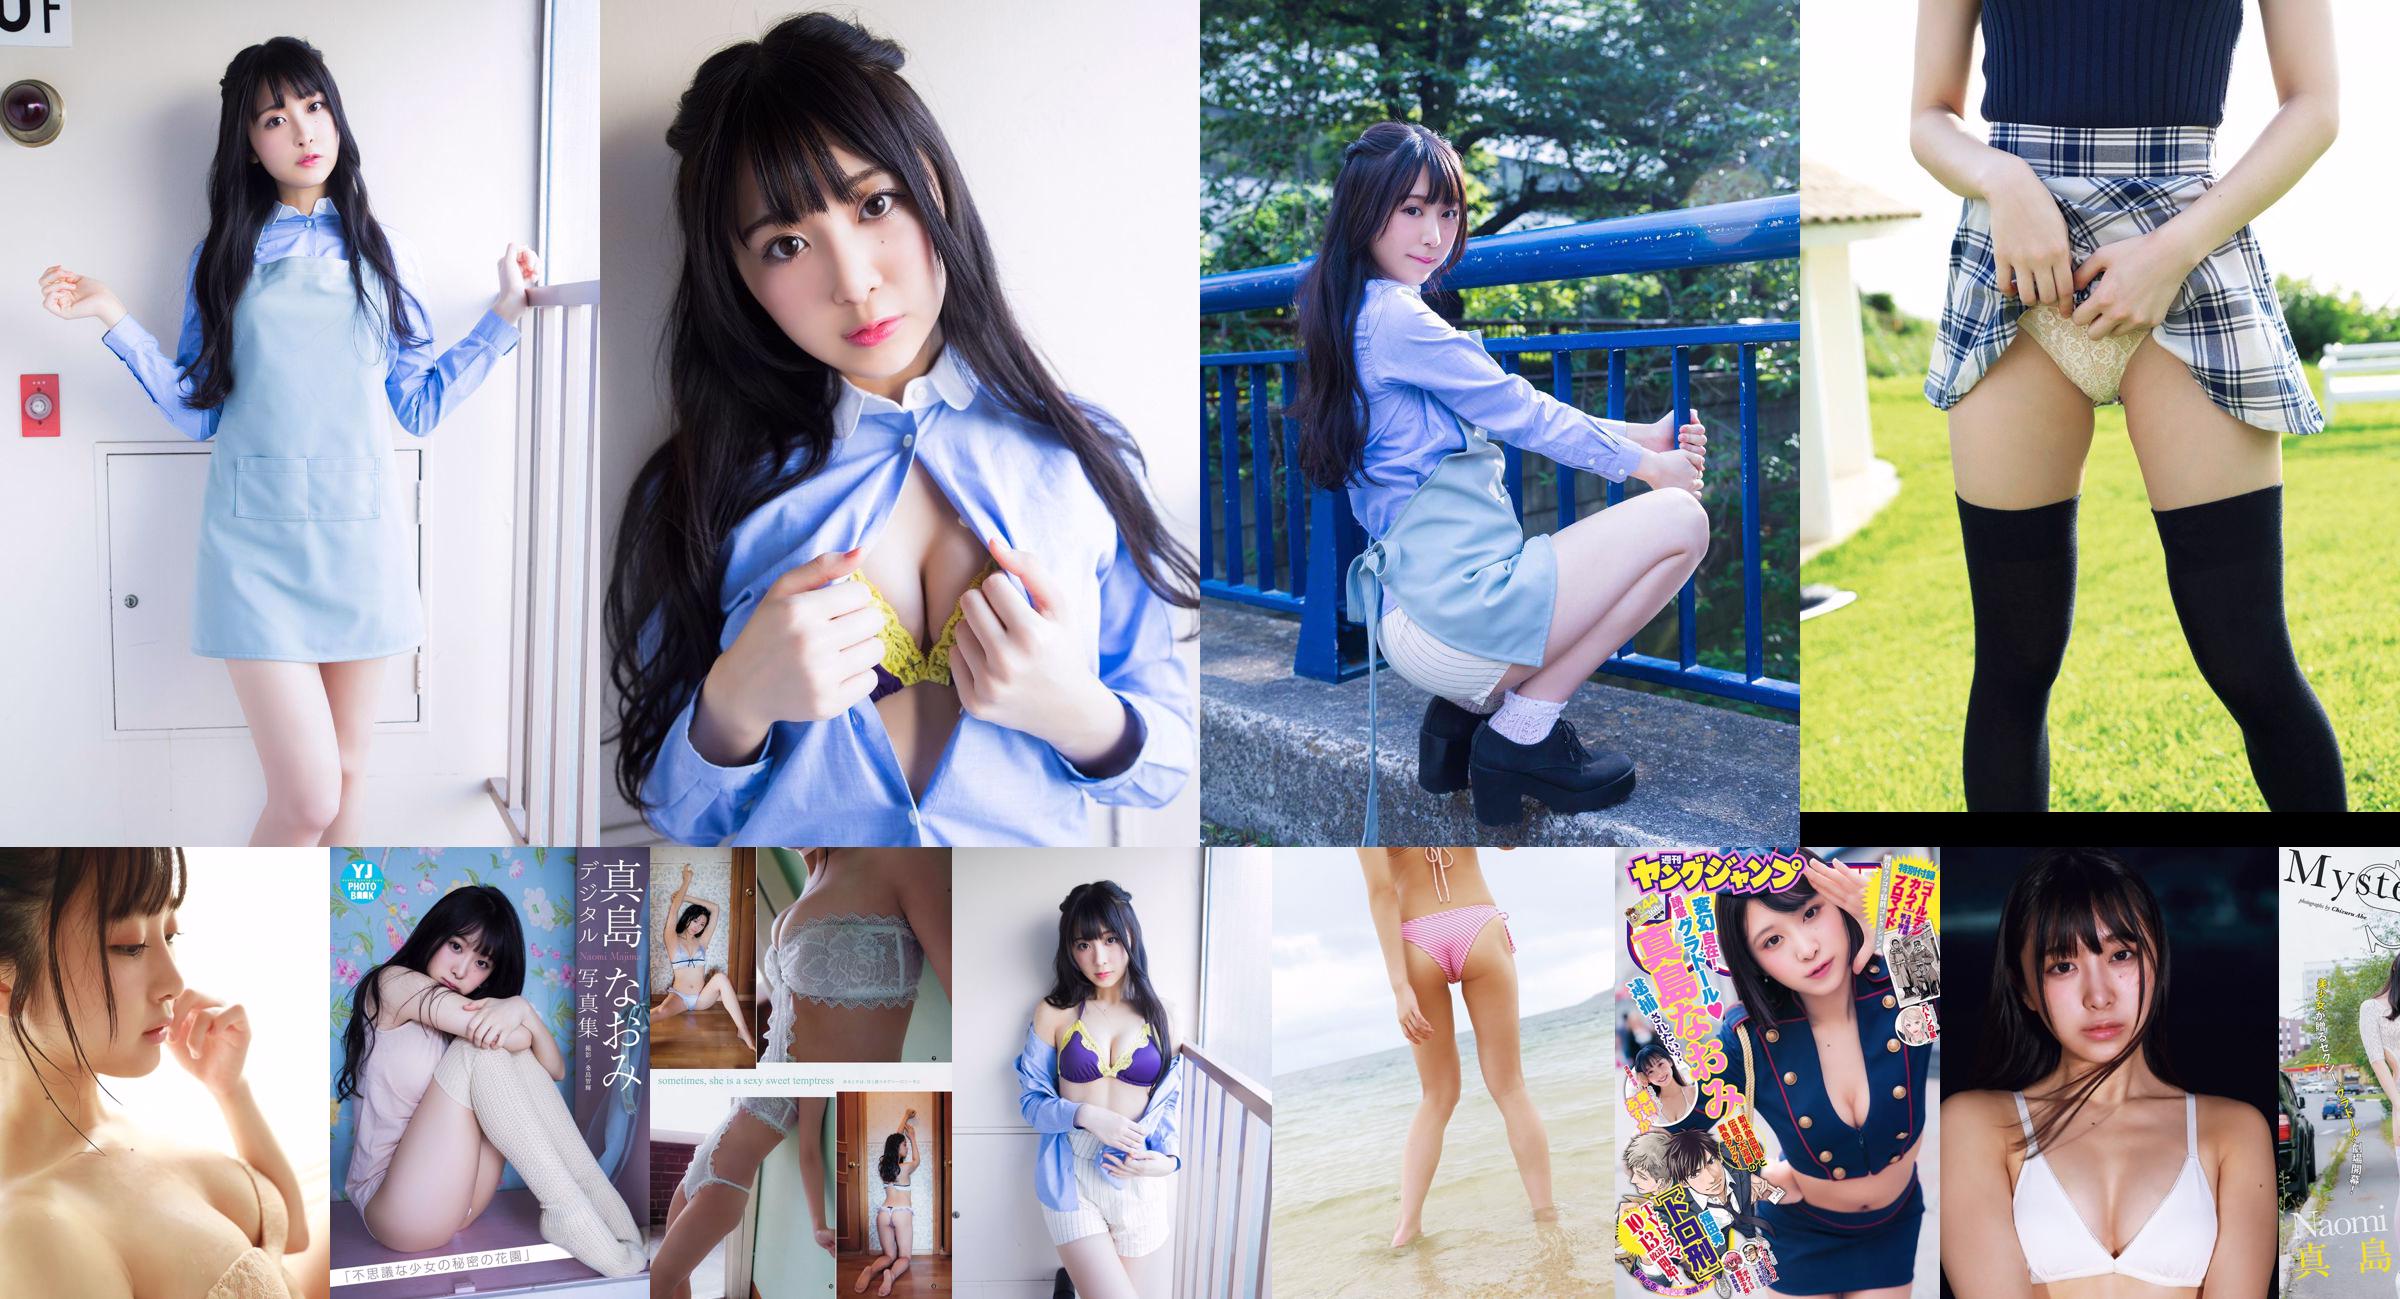 [YS-Web] Vol.851 Nana Mashima "Piękna dziewczyna SEXY!! 9-głowa dziewczyna typu body-lall!!" No.0a0323 Strona 1